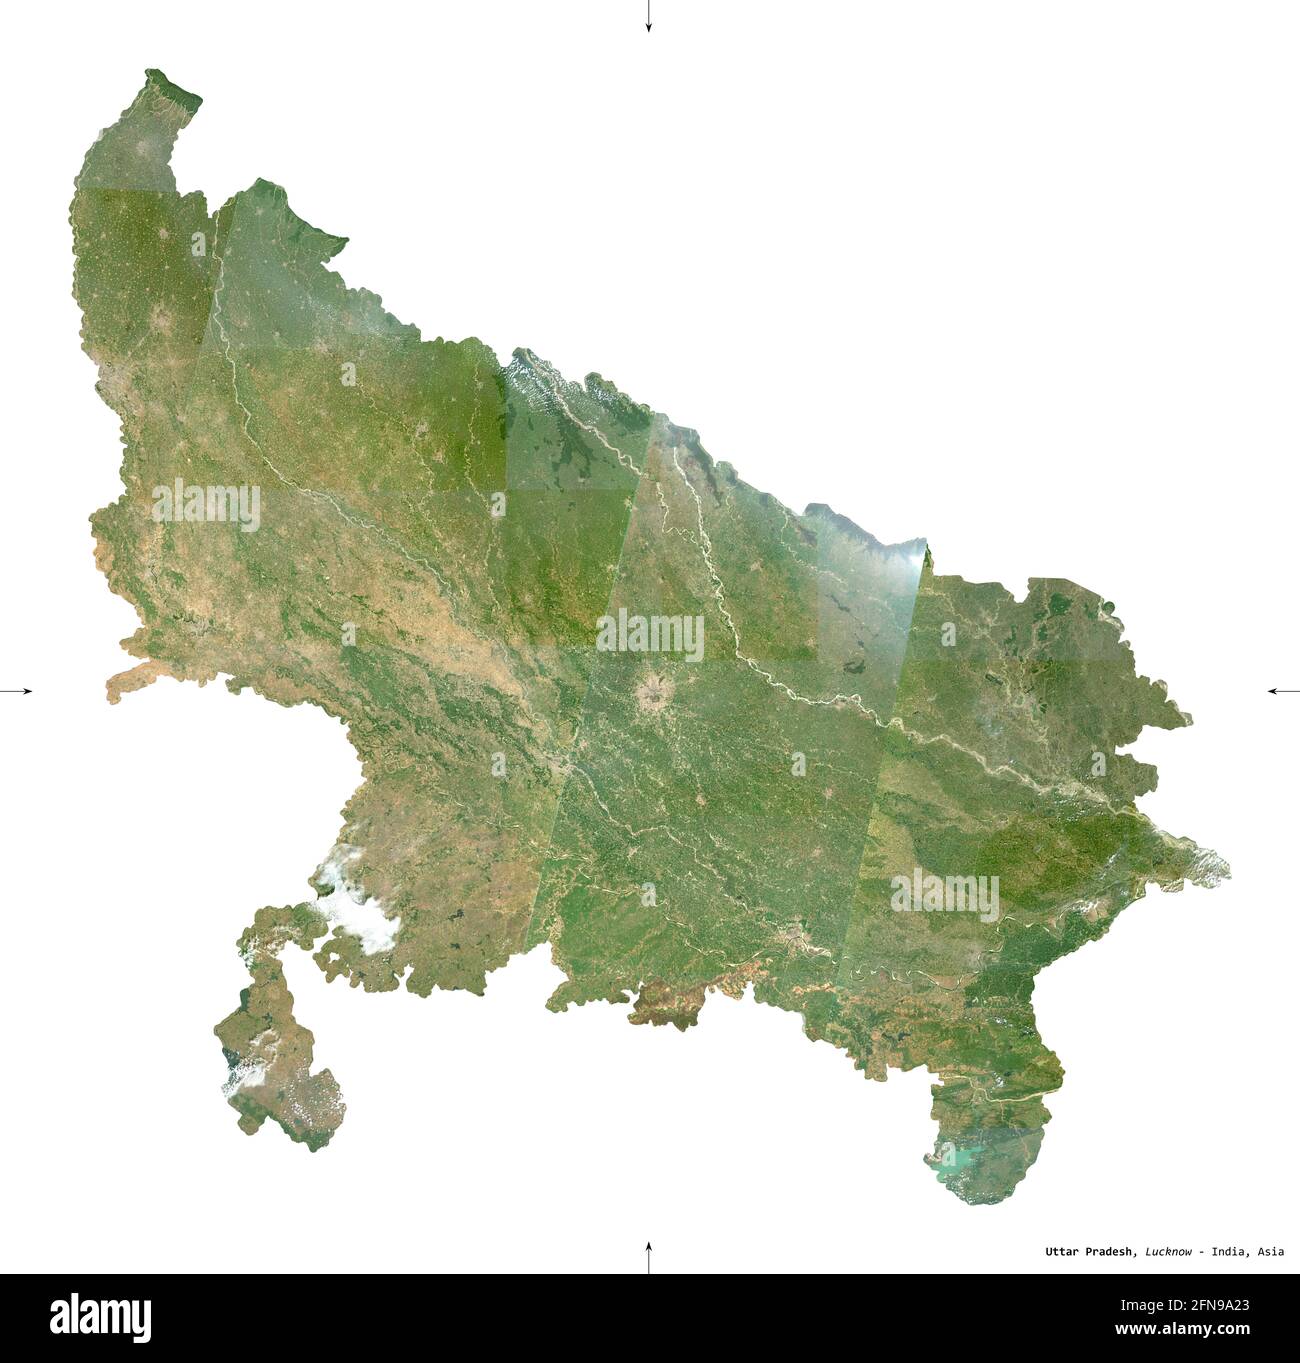 Uttar Pradesh, État de l'Inde. Imagerie satellite Sentinel-2. Forme isolée sur blanc. Description, emplacement de la capitale. Contient Copernic modifié Banque D'Images